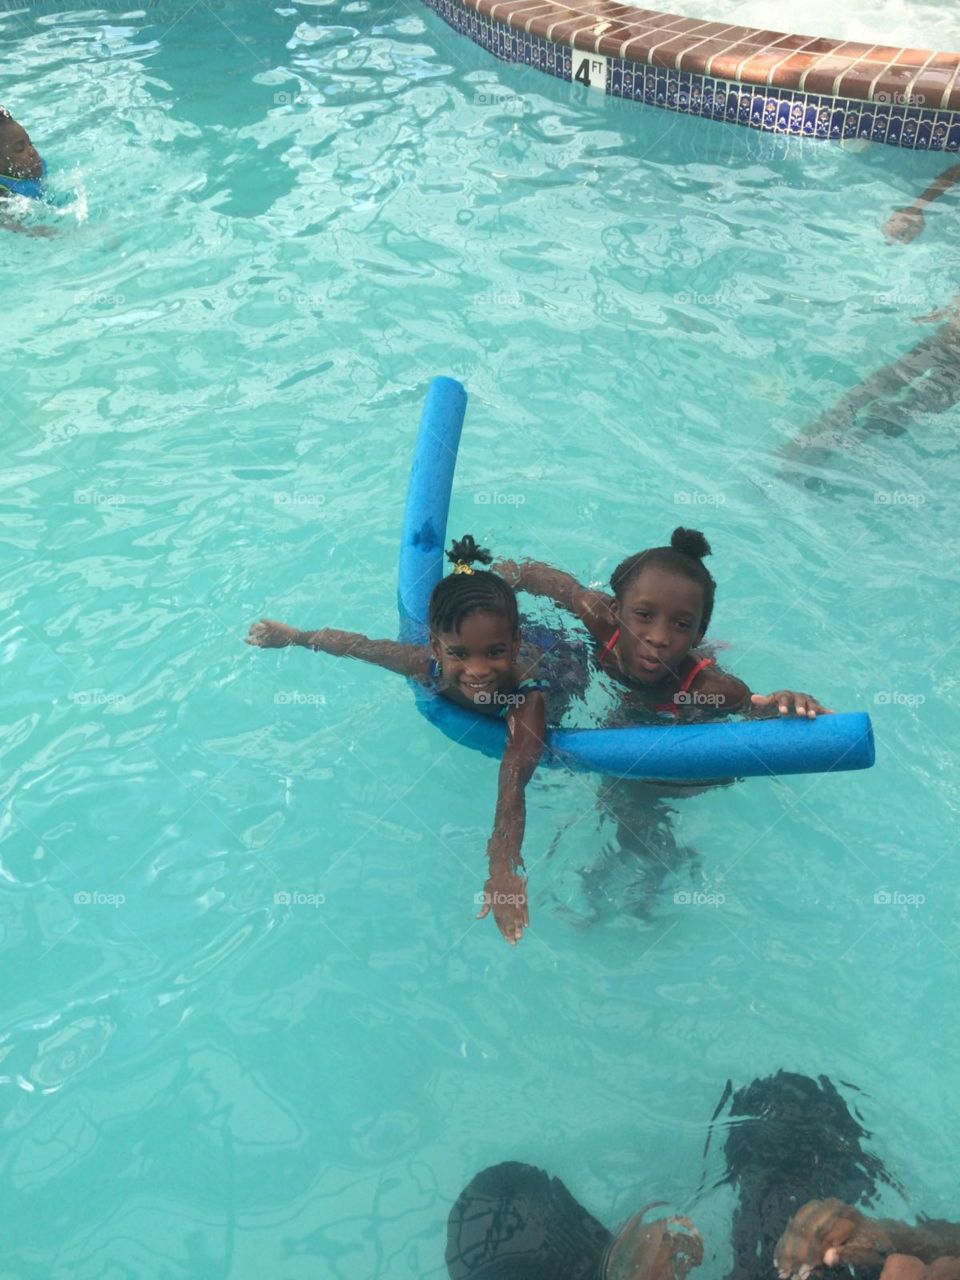 Fun in the pool